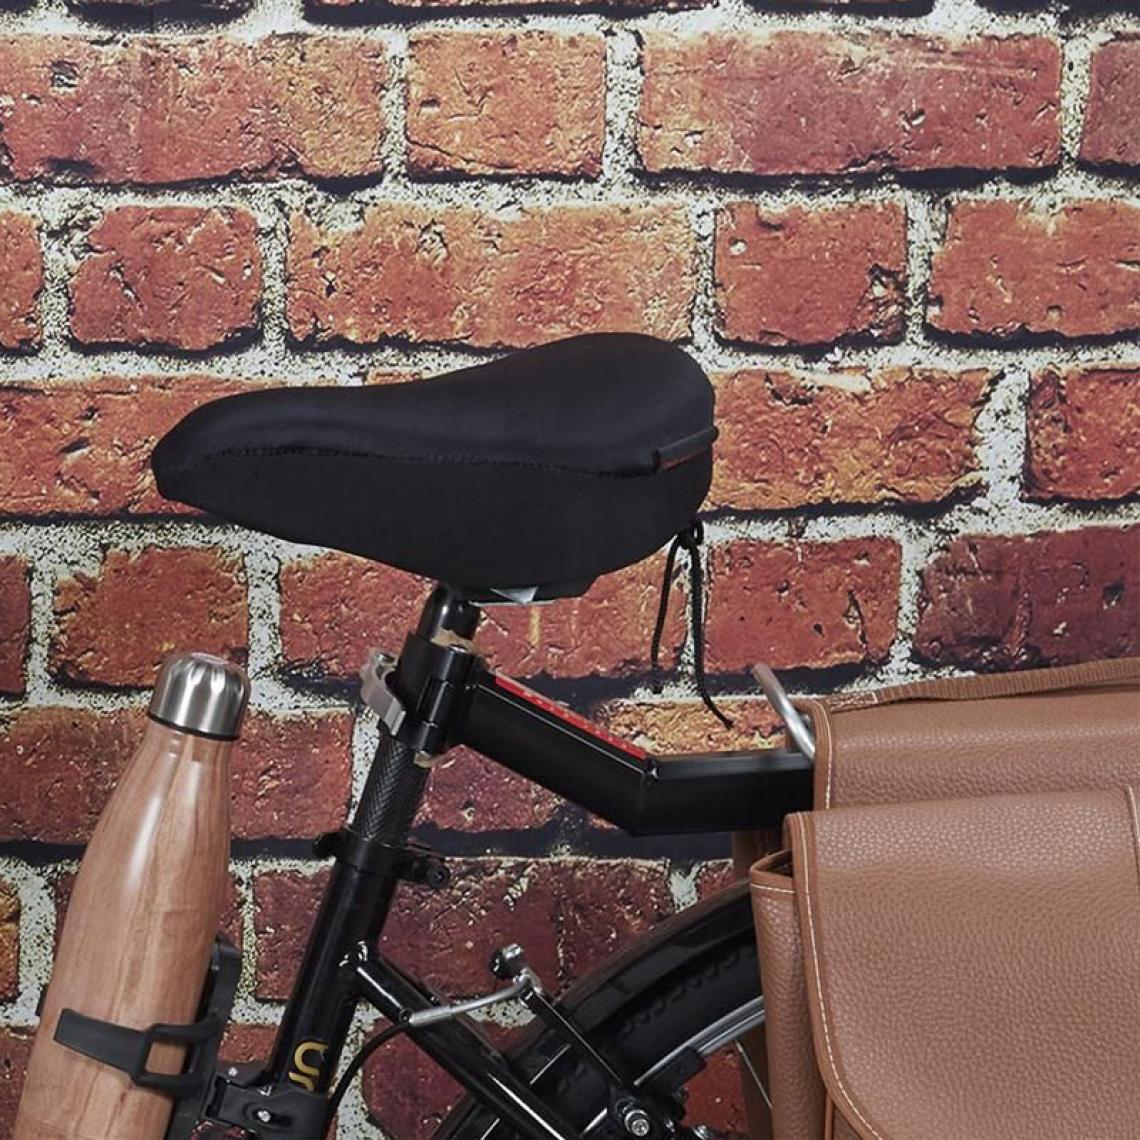 Shop Story - SHOP-STORY - COMFORT SADDLE : Housse en Gel Ultra Confort pour Selle de Vélo - Vélo électrique